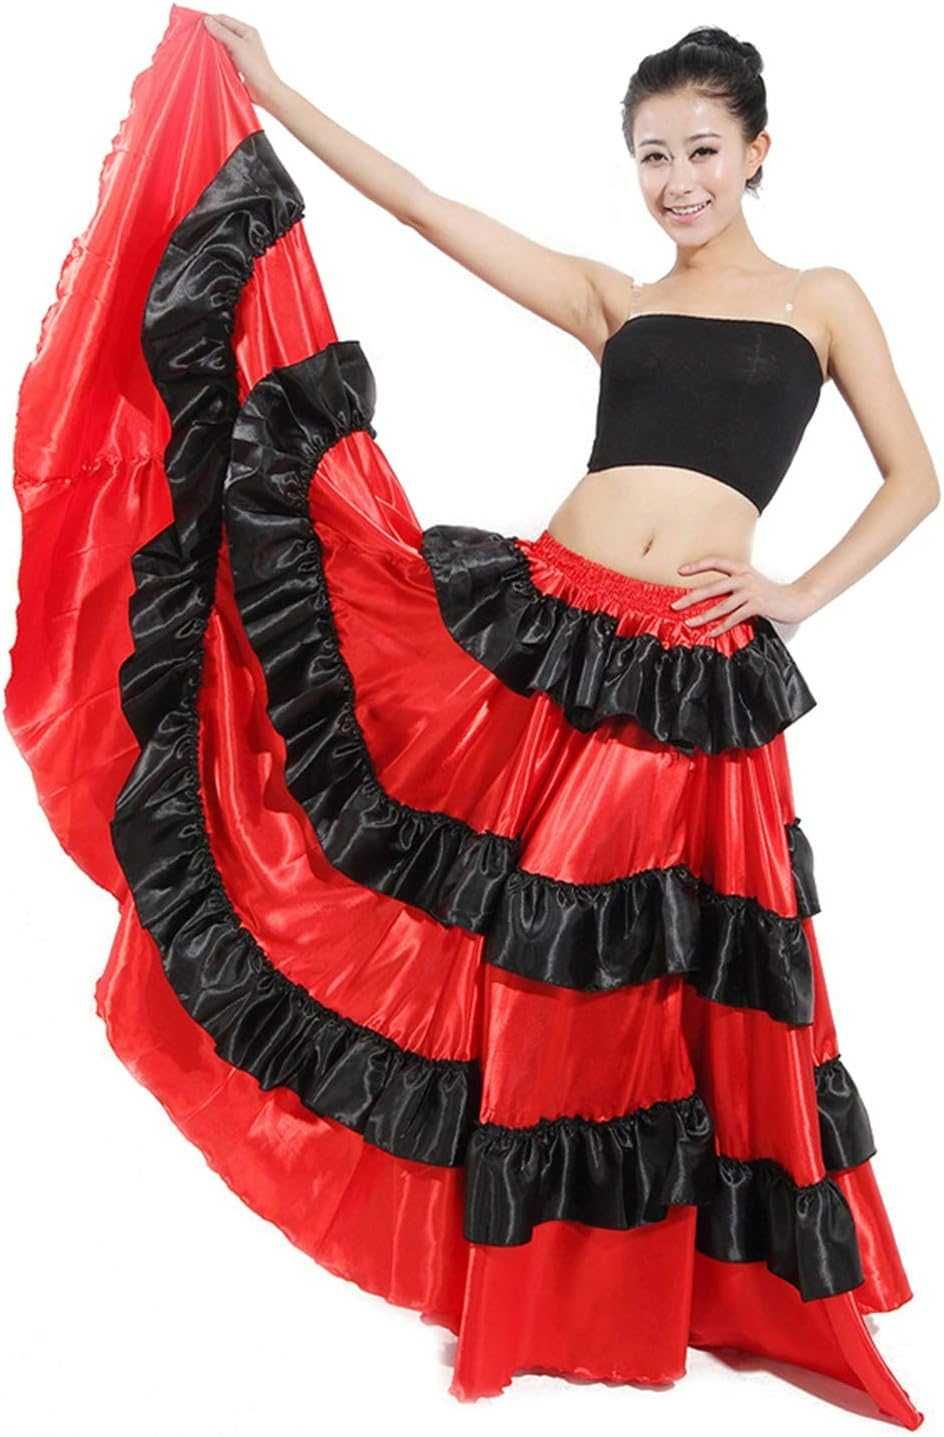 Nowa spódnica do tańca FLAMENCO / kostium / czerwona 180 stopni !2362!